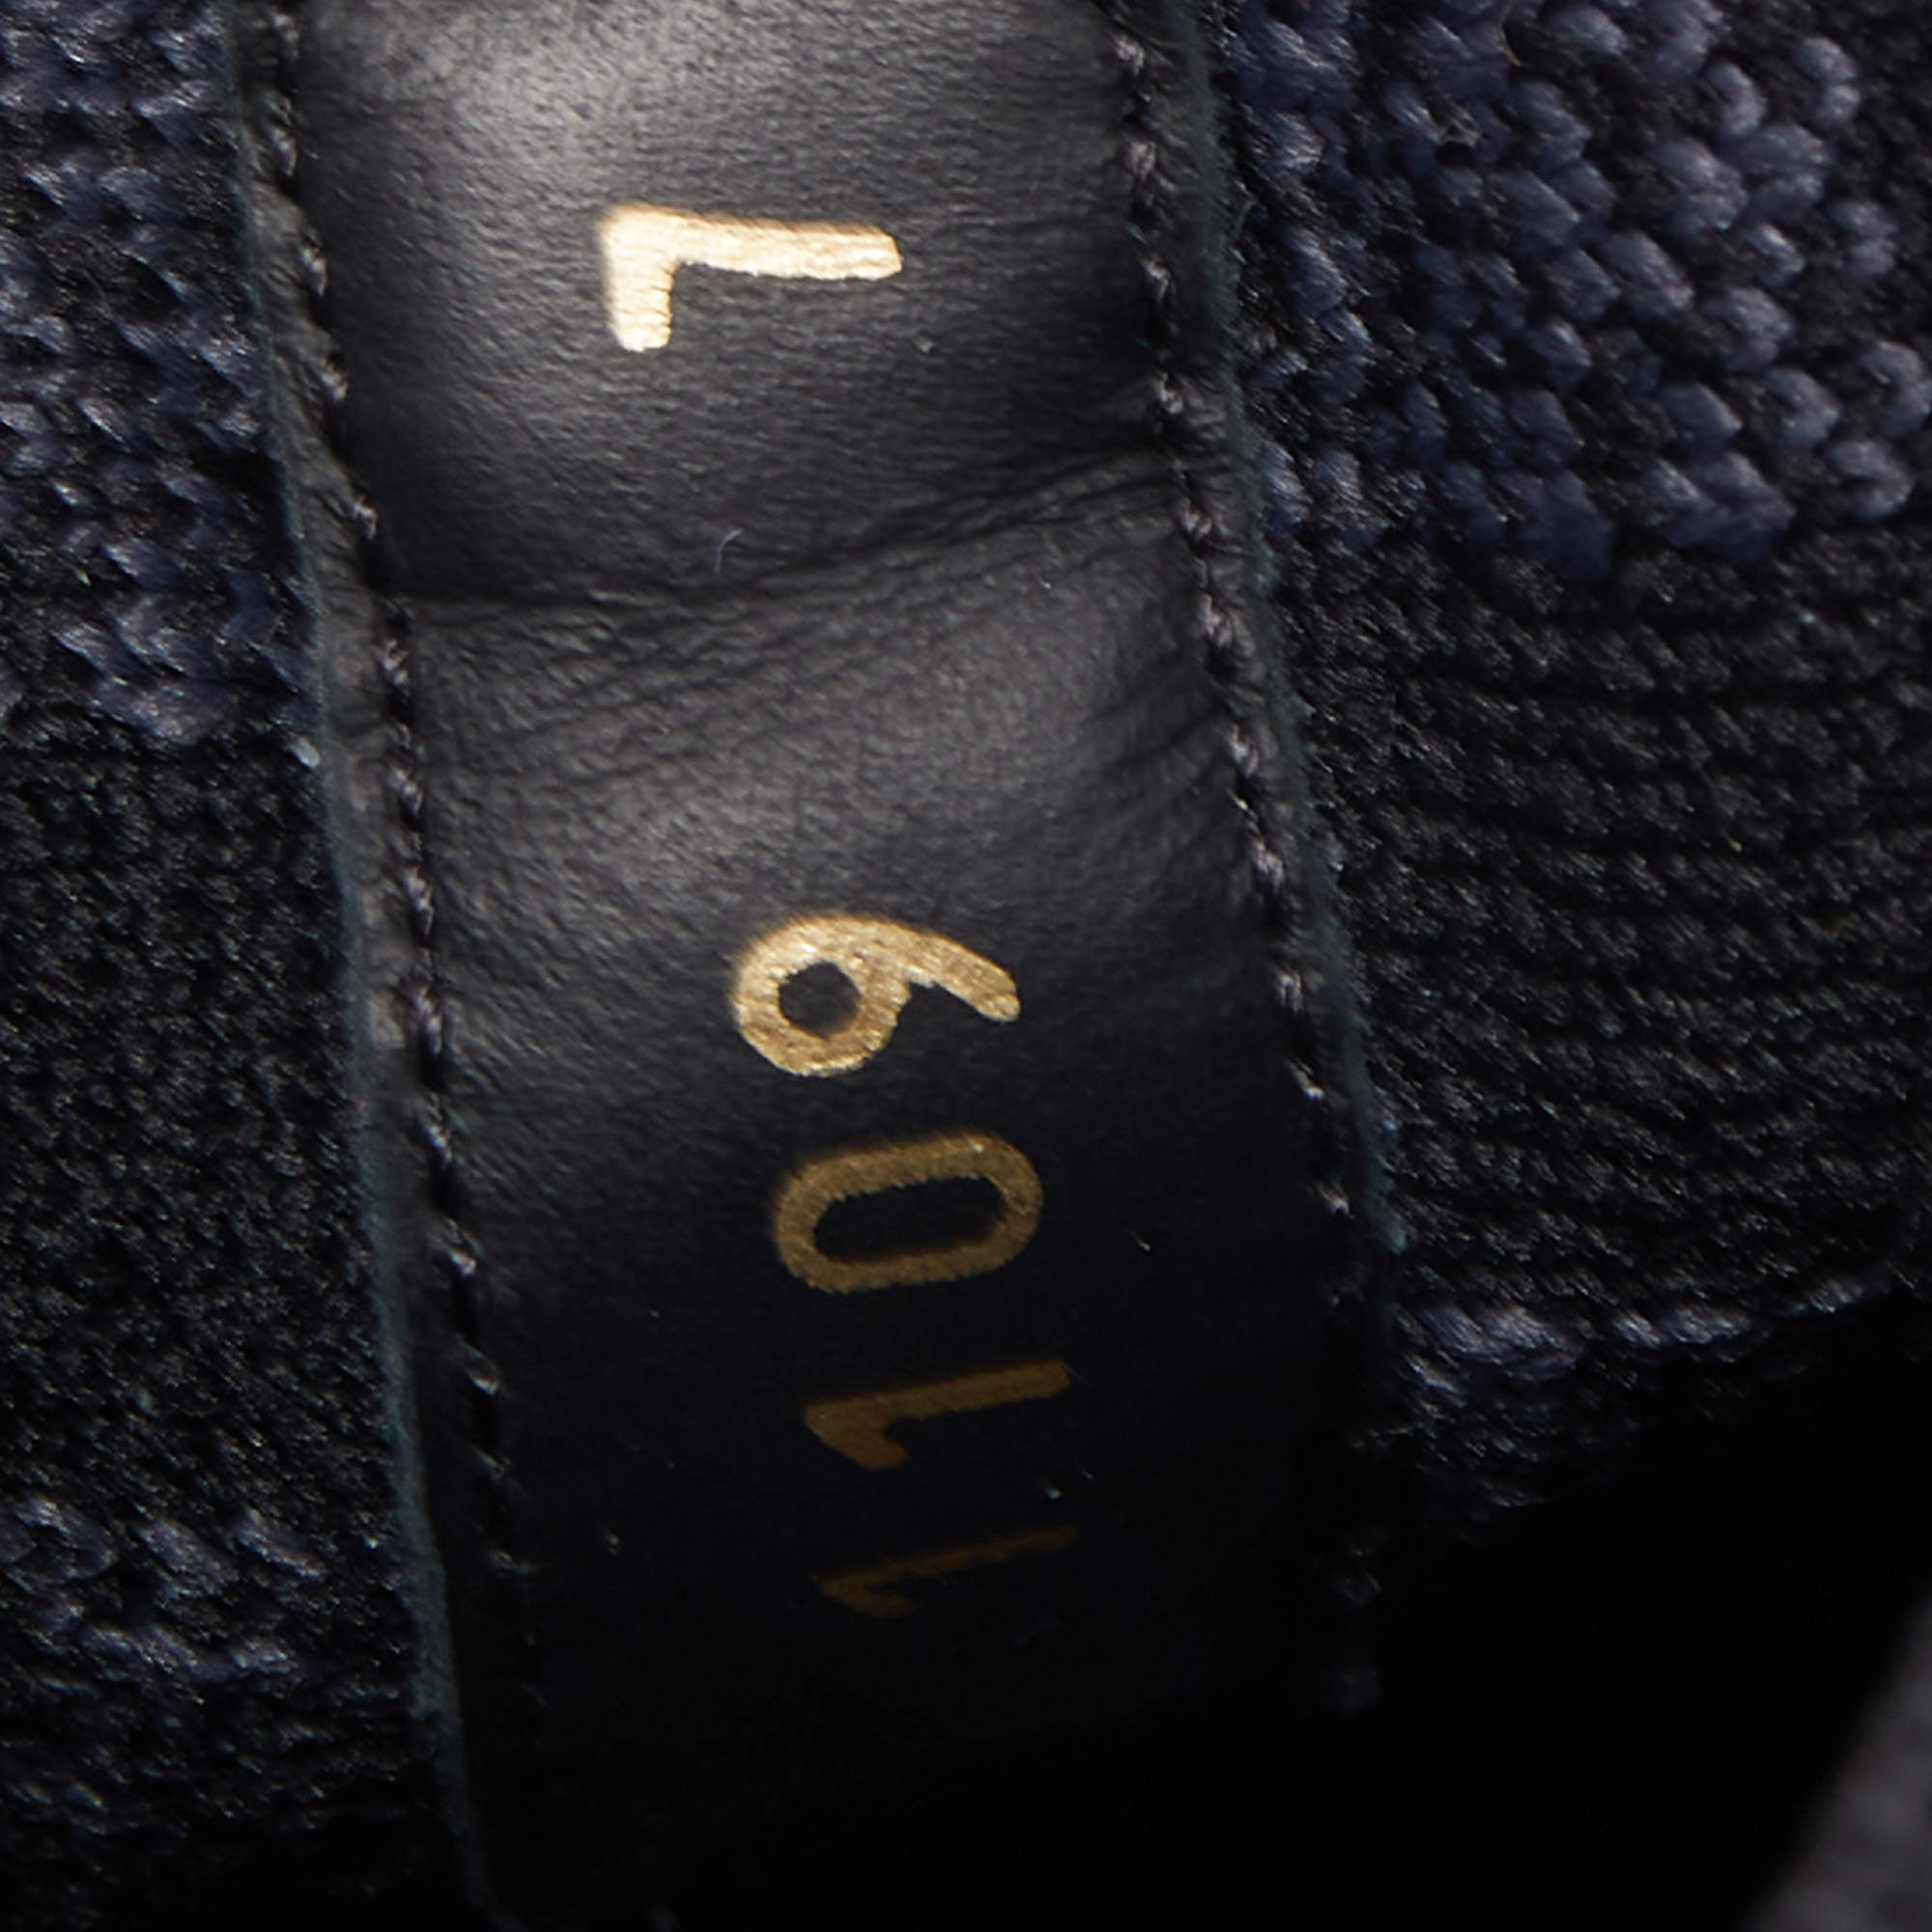 Louis Vuitton Black/Grey Damier Knit Fabric Fastlane Low Top